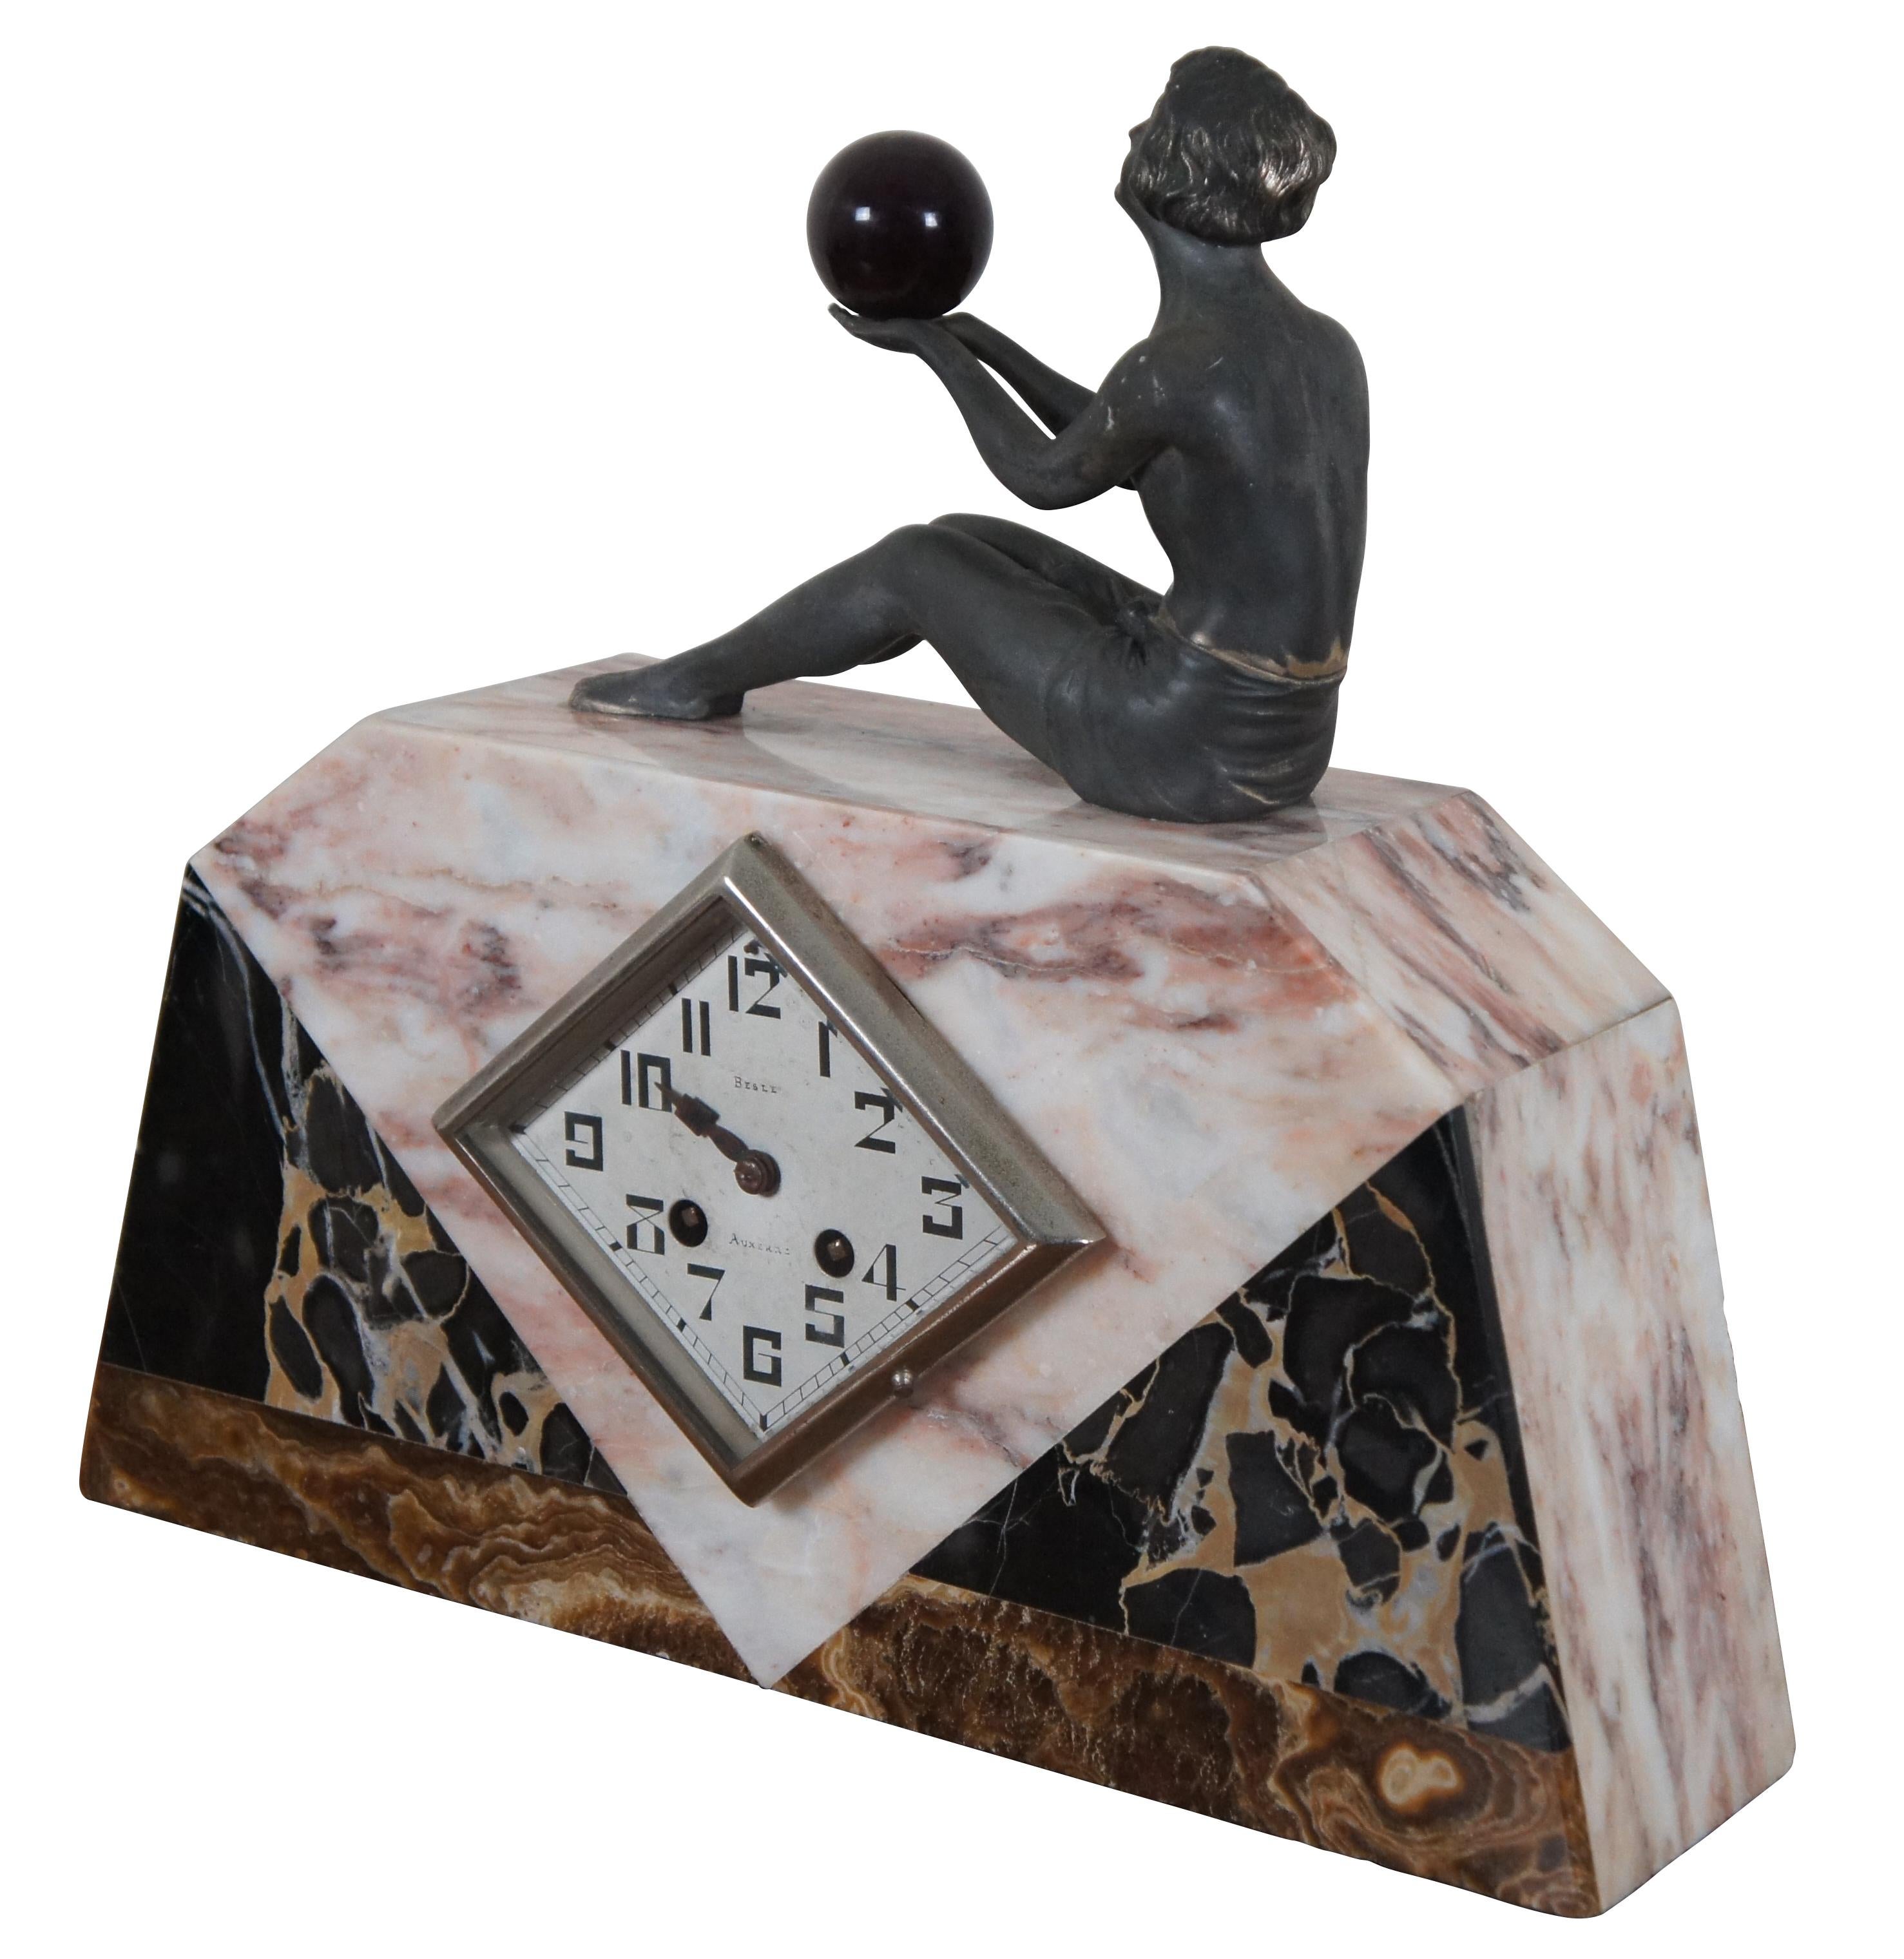 Ancienne horloge de cheminée / bureau art déco des années 1920 par Besle Auxerre, faite de plusieurs couleurs de marbre avec une face en forme de diamant et surmontée d'une figure féminine assise en bronze tenant un orbe rouge profond. Œuvres